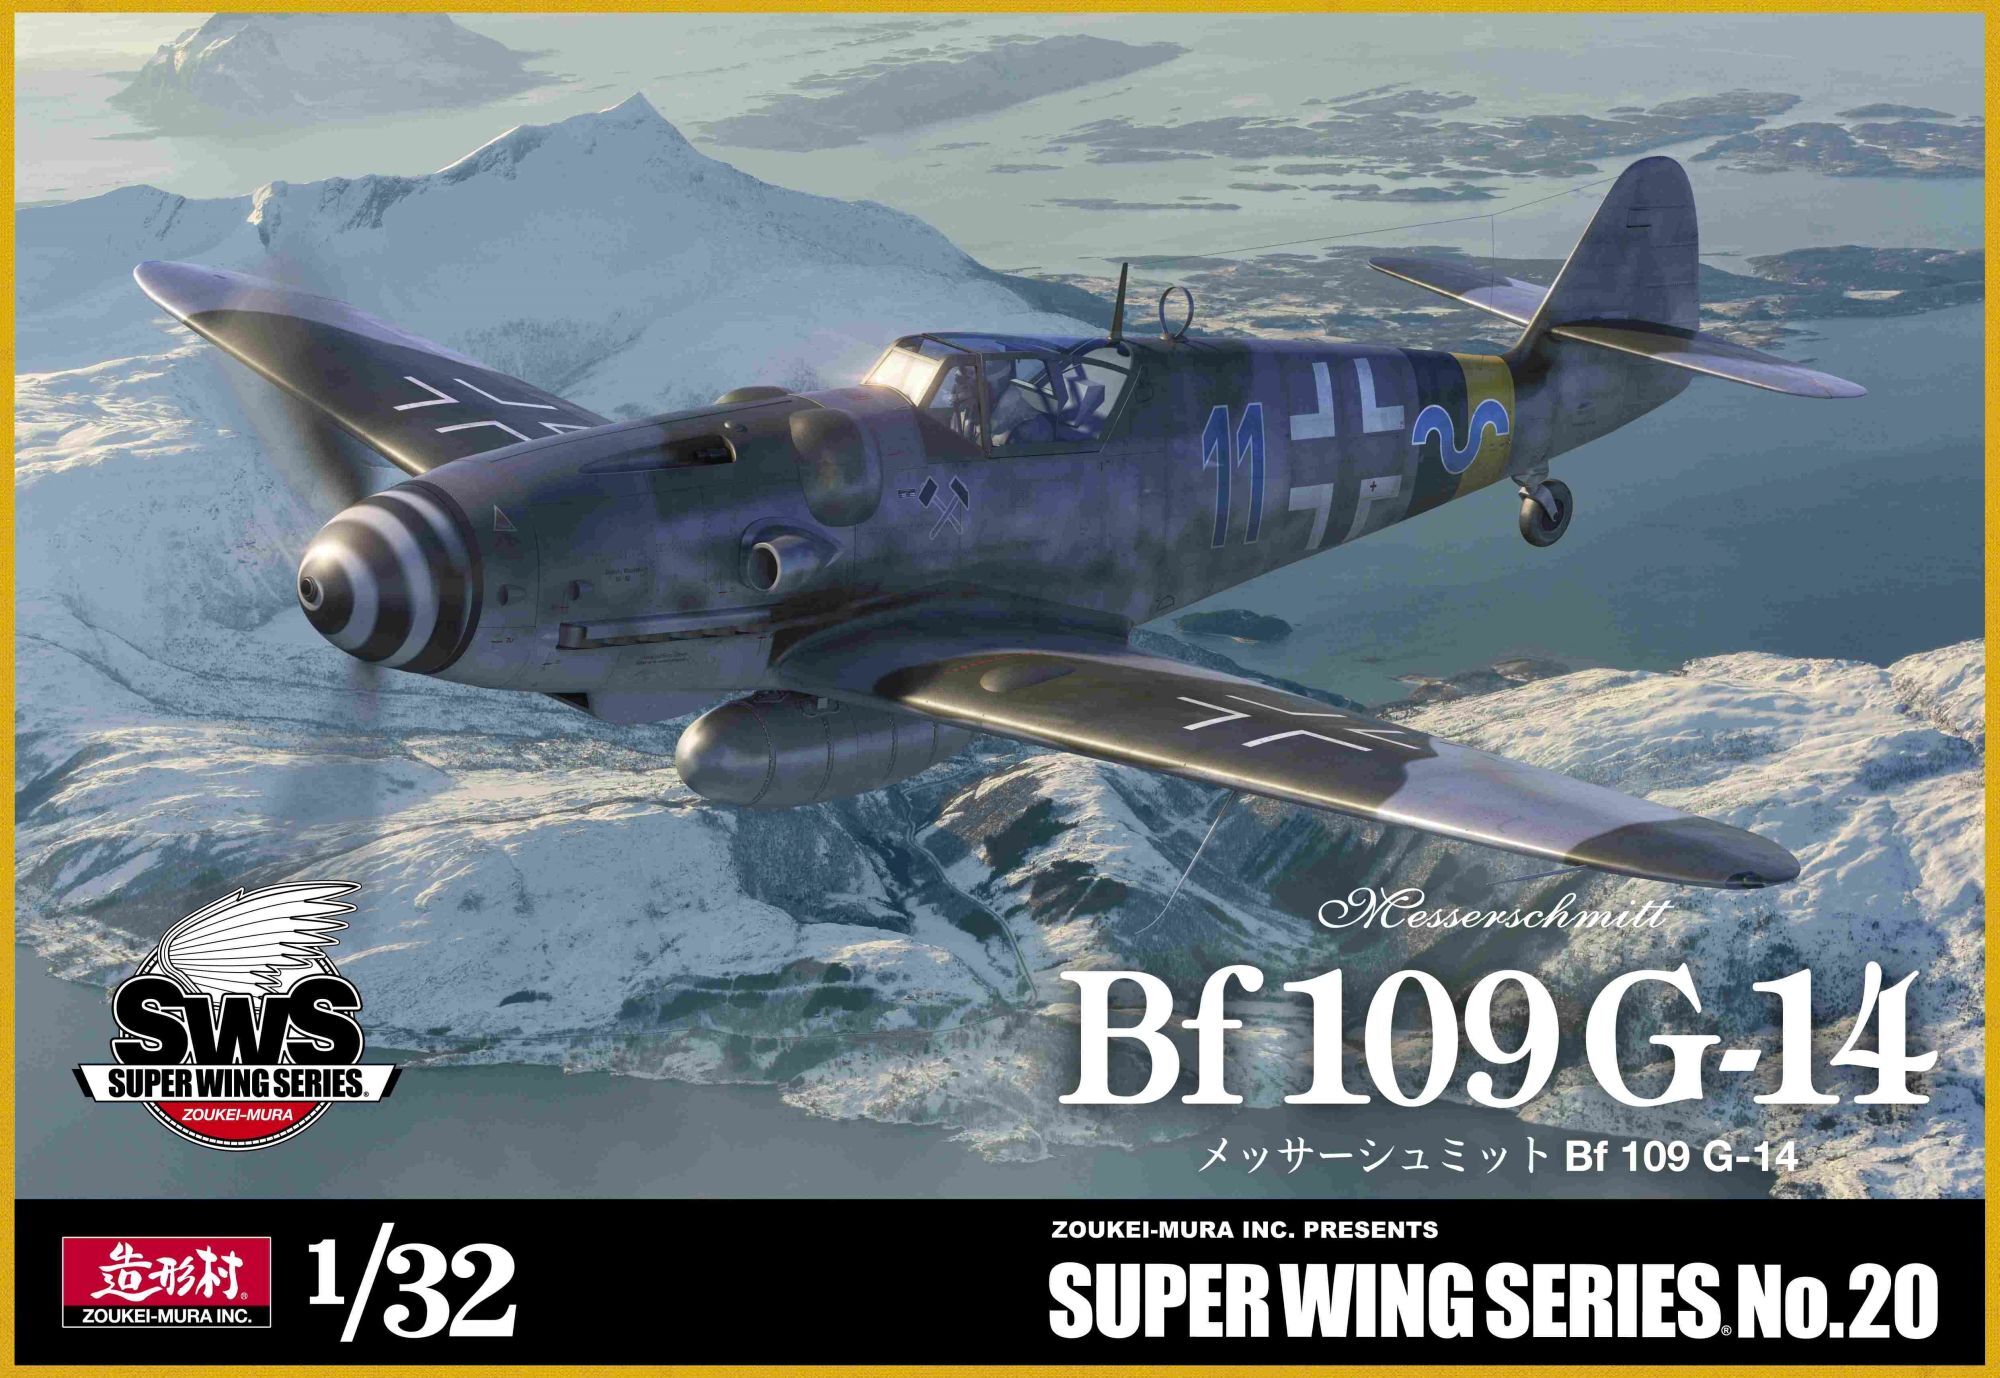 スーパーウイングシリーズ[SWS-20]SWS 1/32 メッサーシュミット Bf 109 G-14